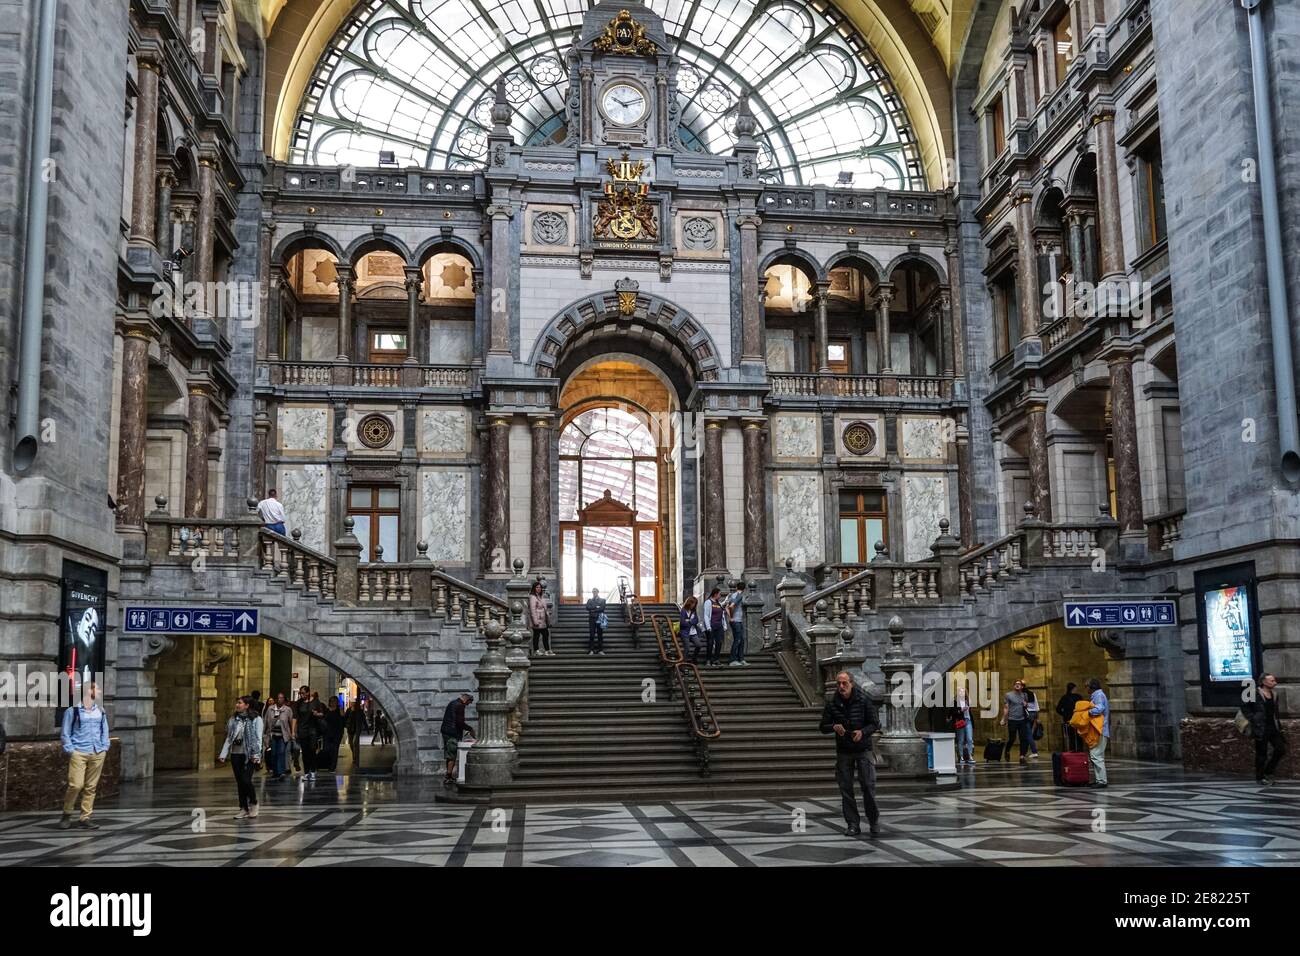 Passagers au hall d'entrée de la gare centrale d'Anvers, Belgique Banque D'Images